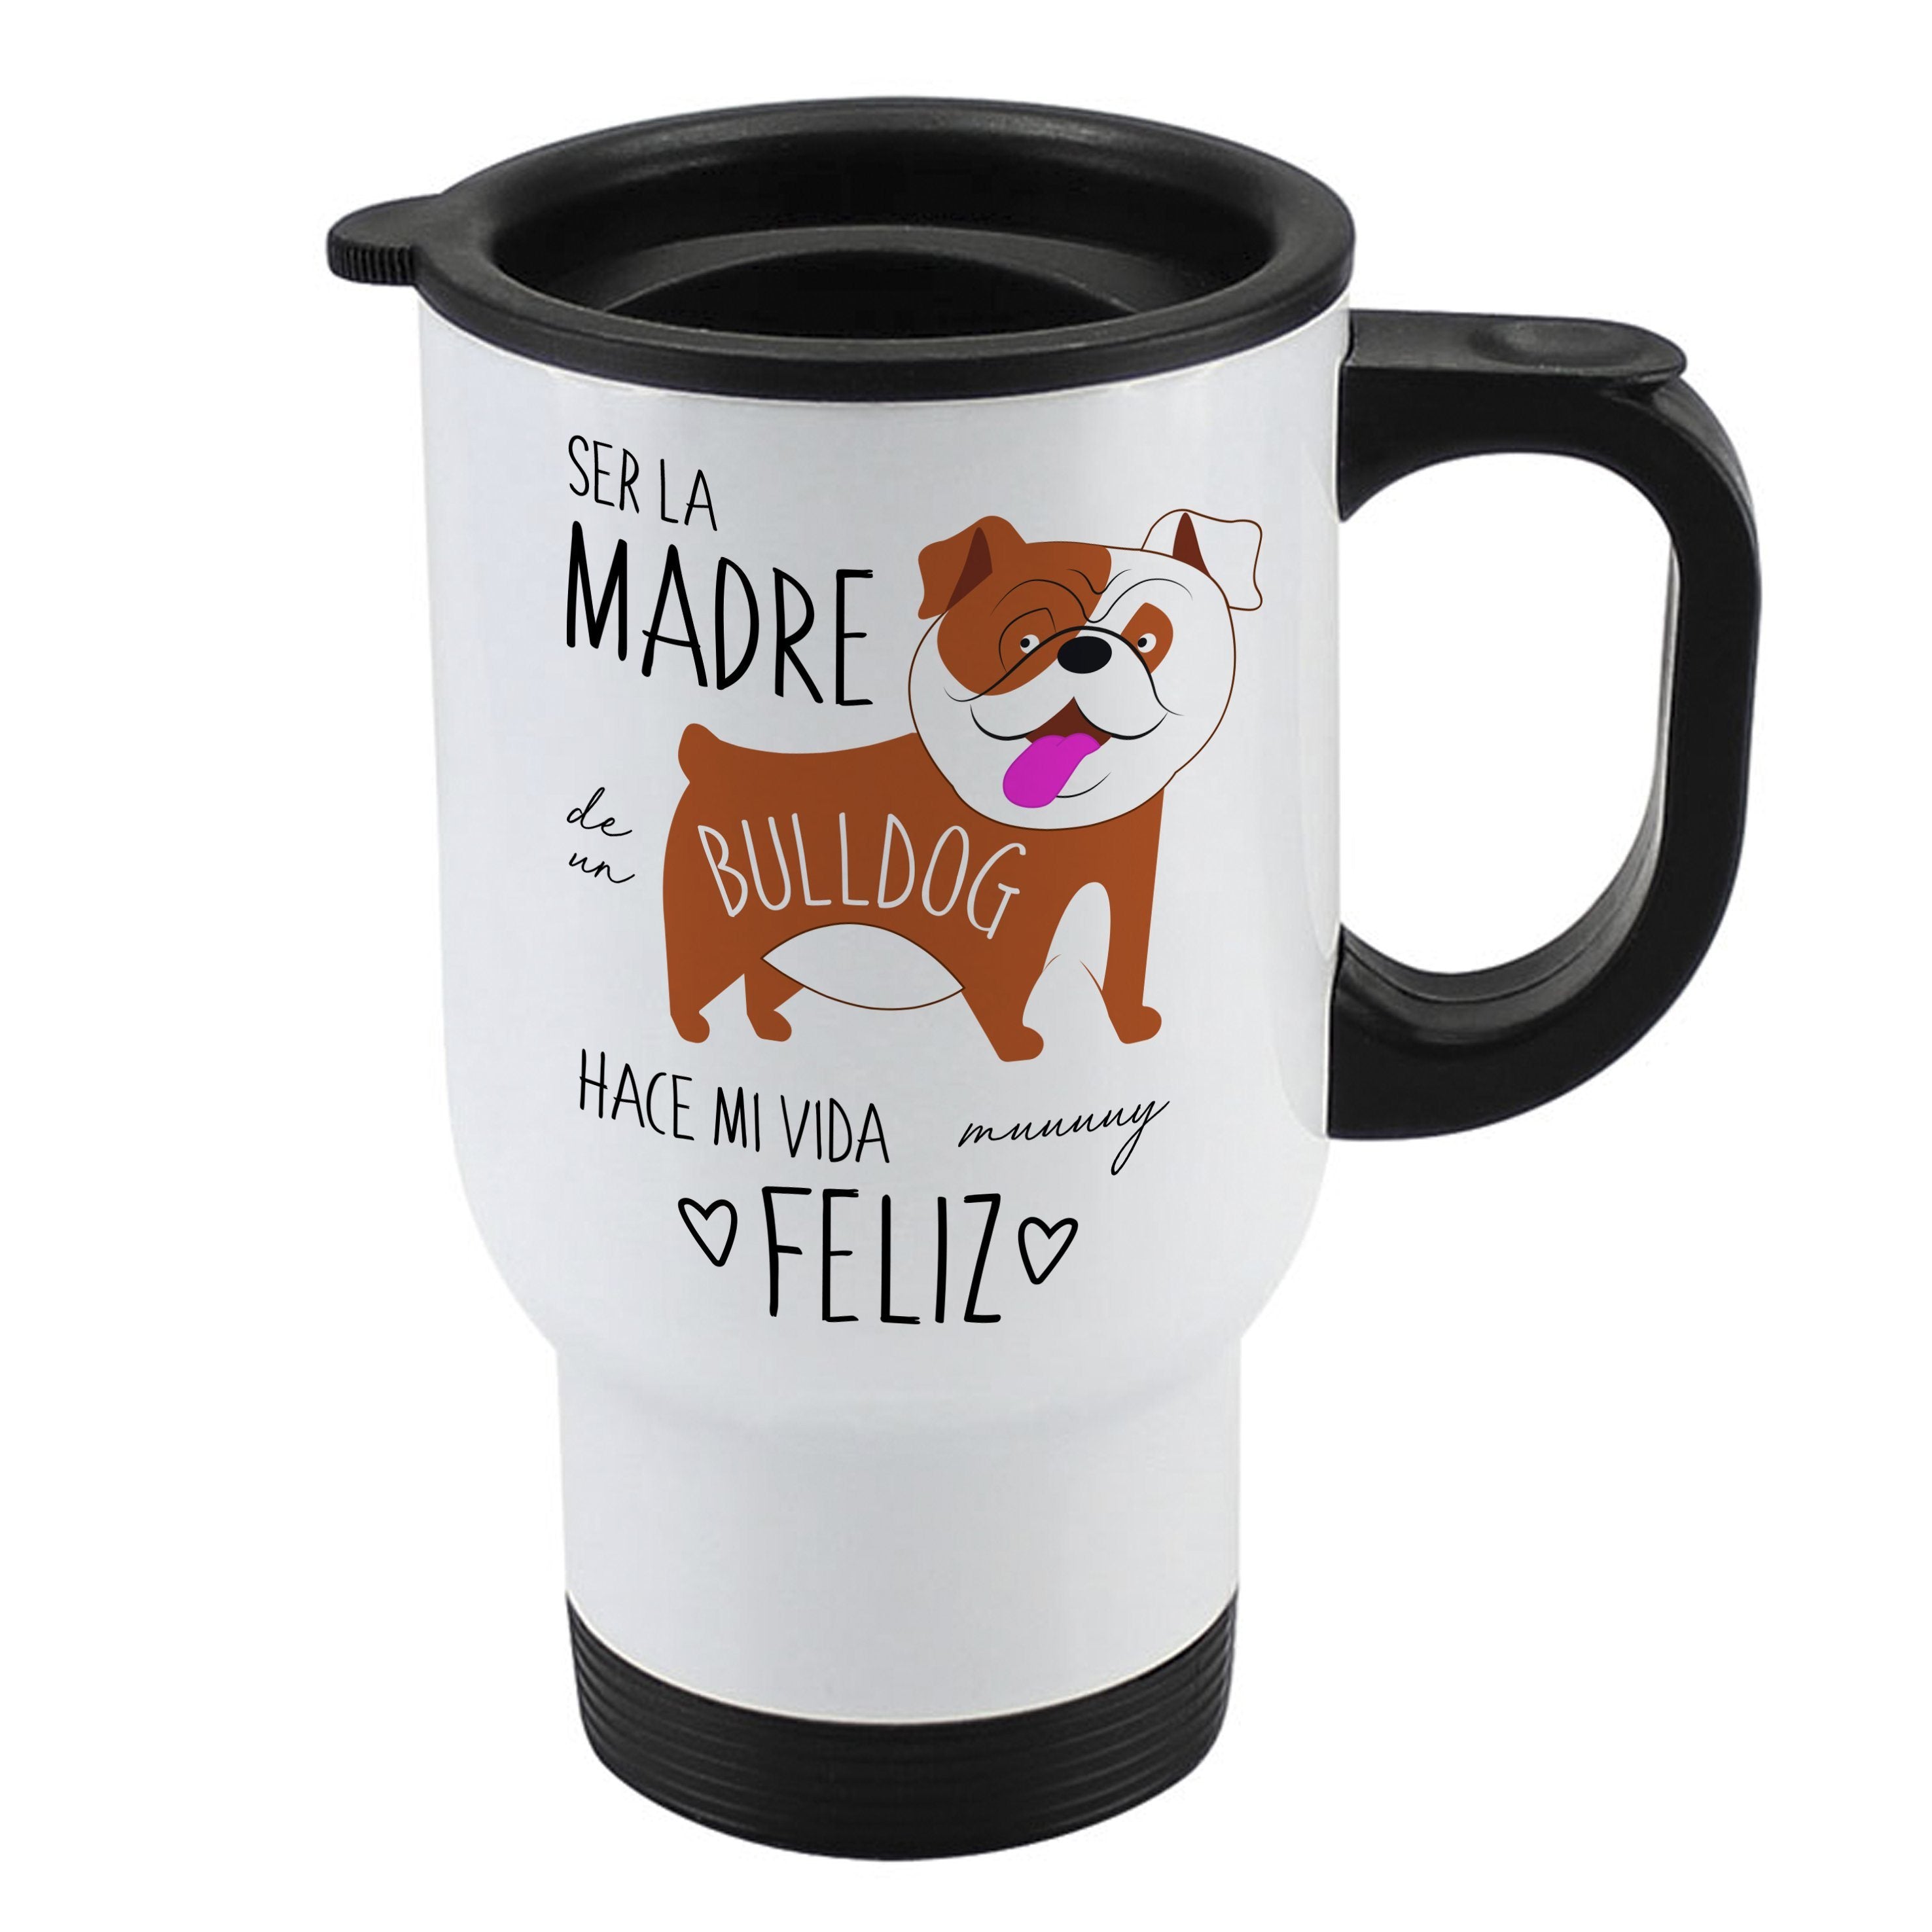 Mug 410cc - Bull Dog Inglés Tienda Petfy